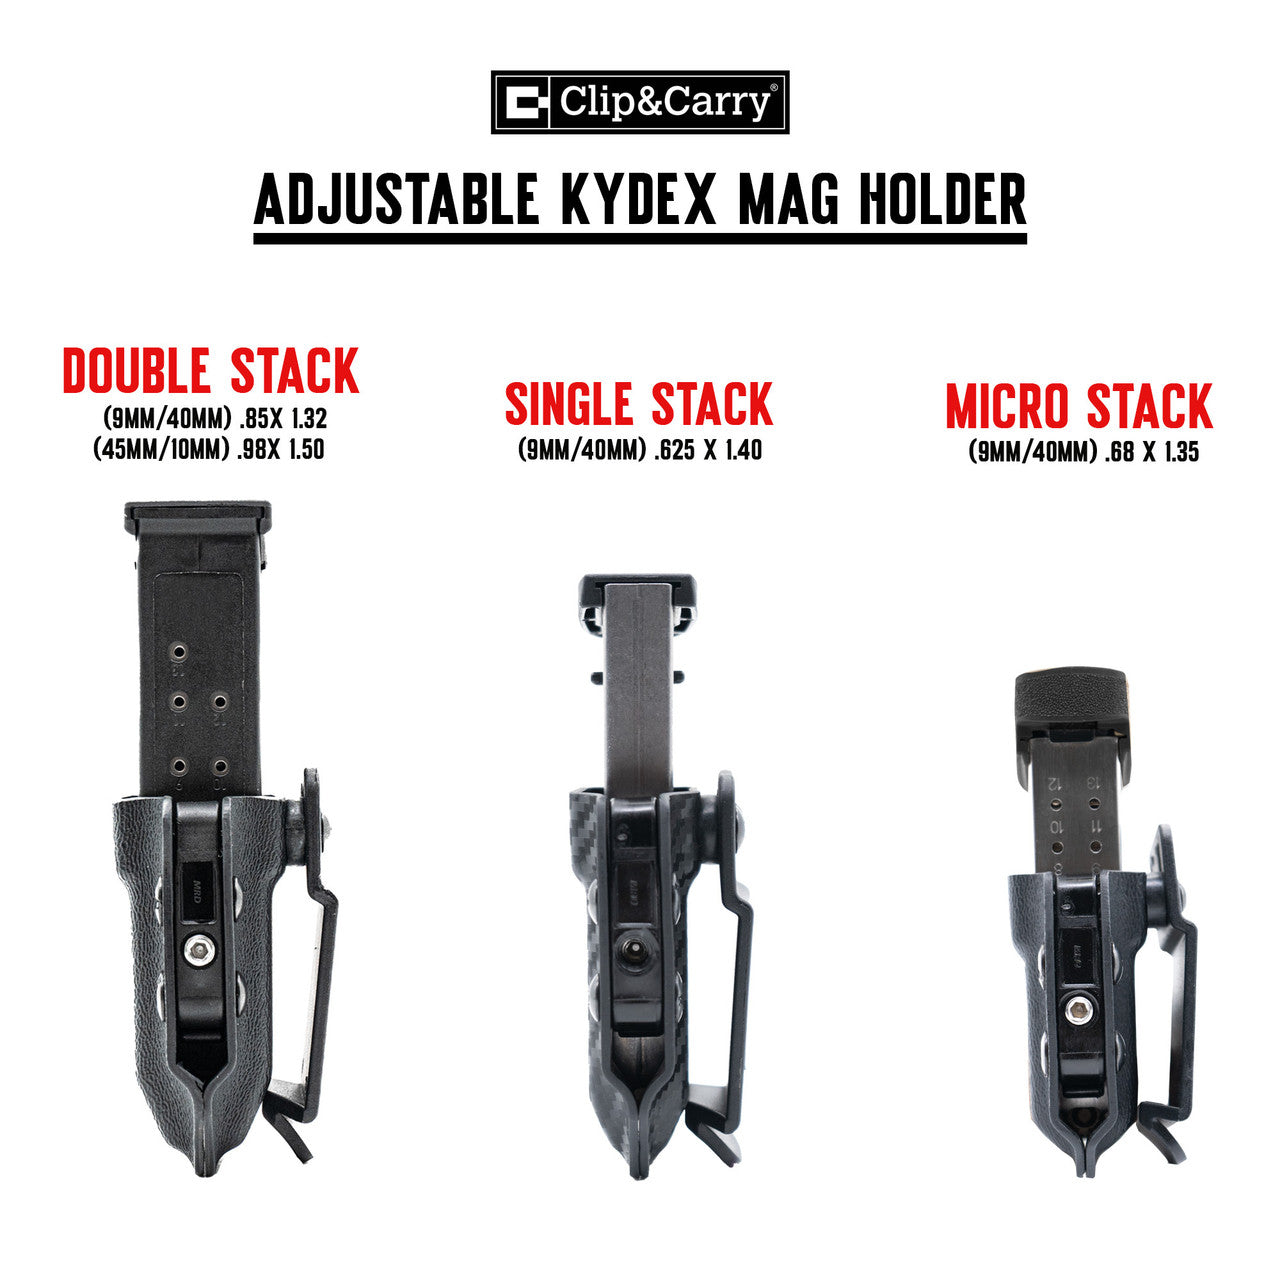 Adjustable Kydex IWB/OWB Mag Holder Clip & Carry